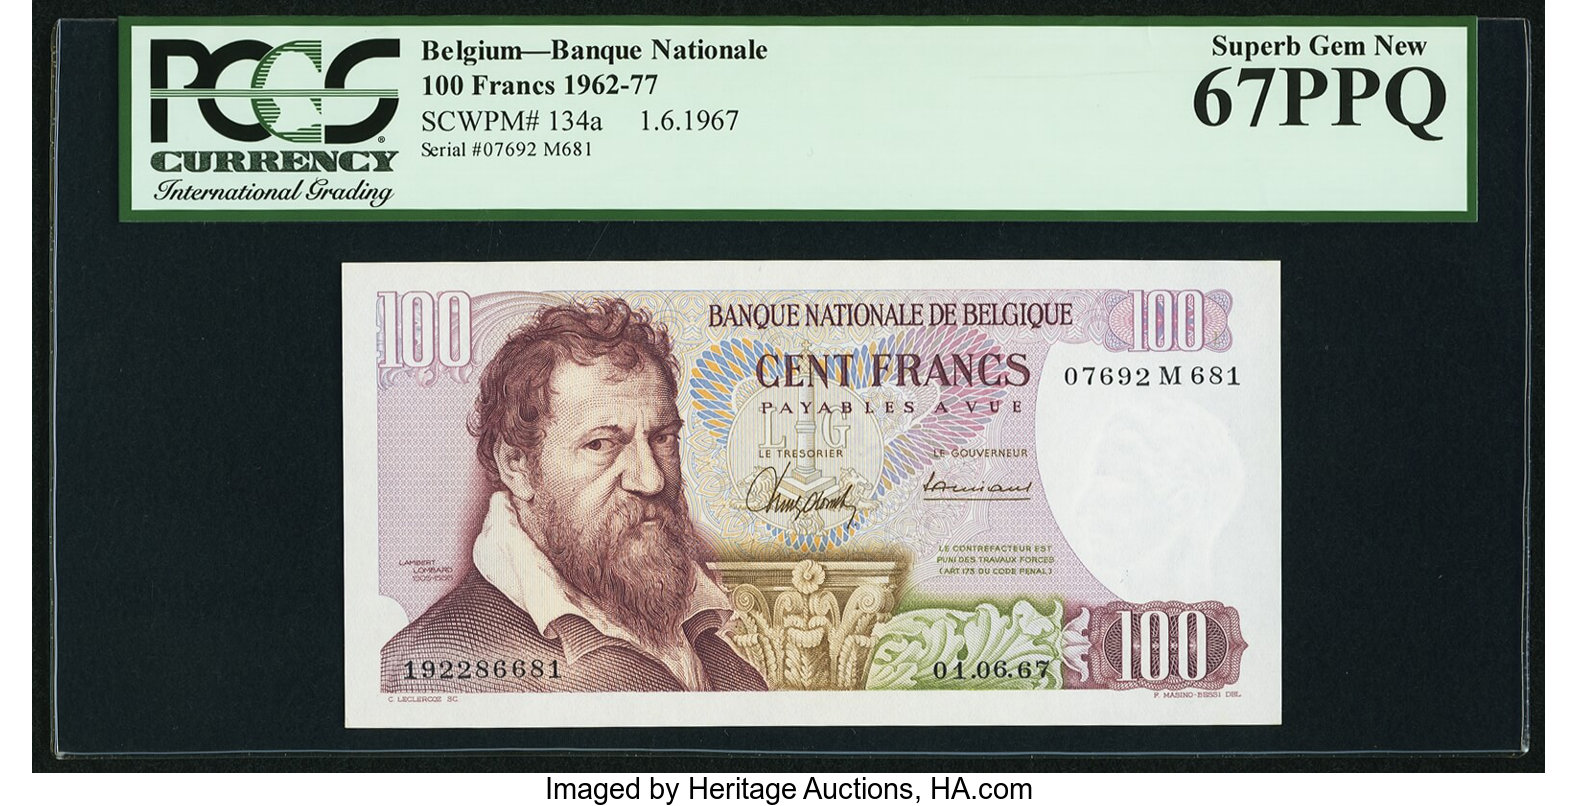 Banque Nationale de Belgique 100 francs B581c,P134 01 03 1971 